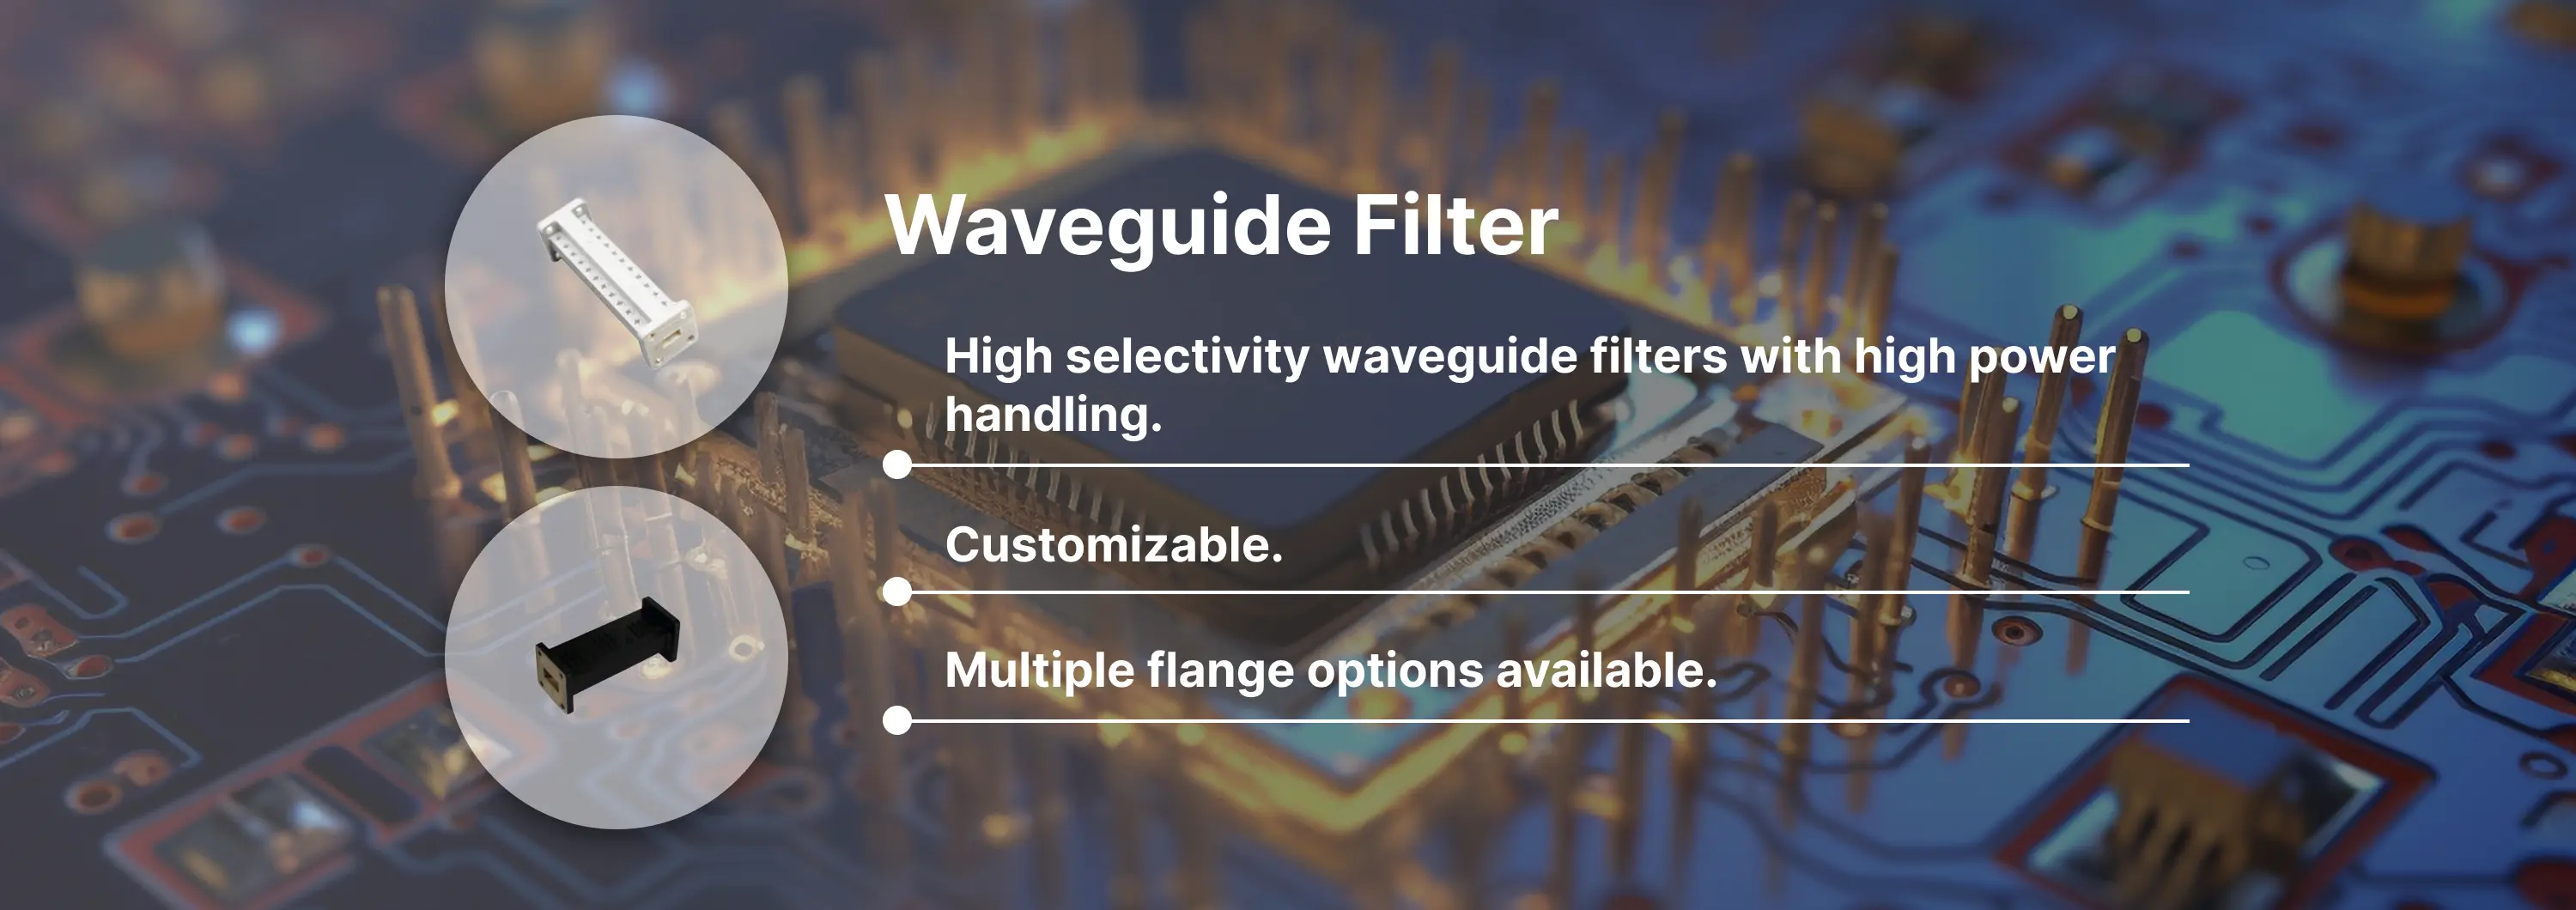 Waveguide Filter Banner